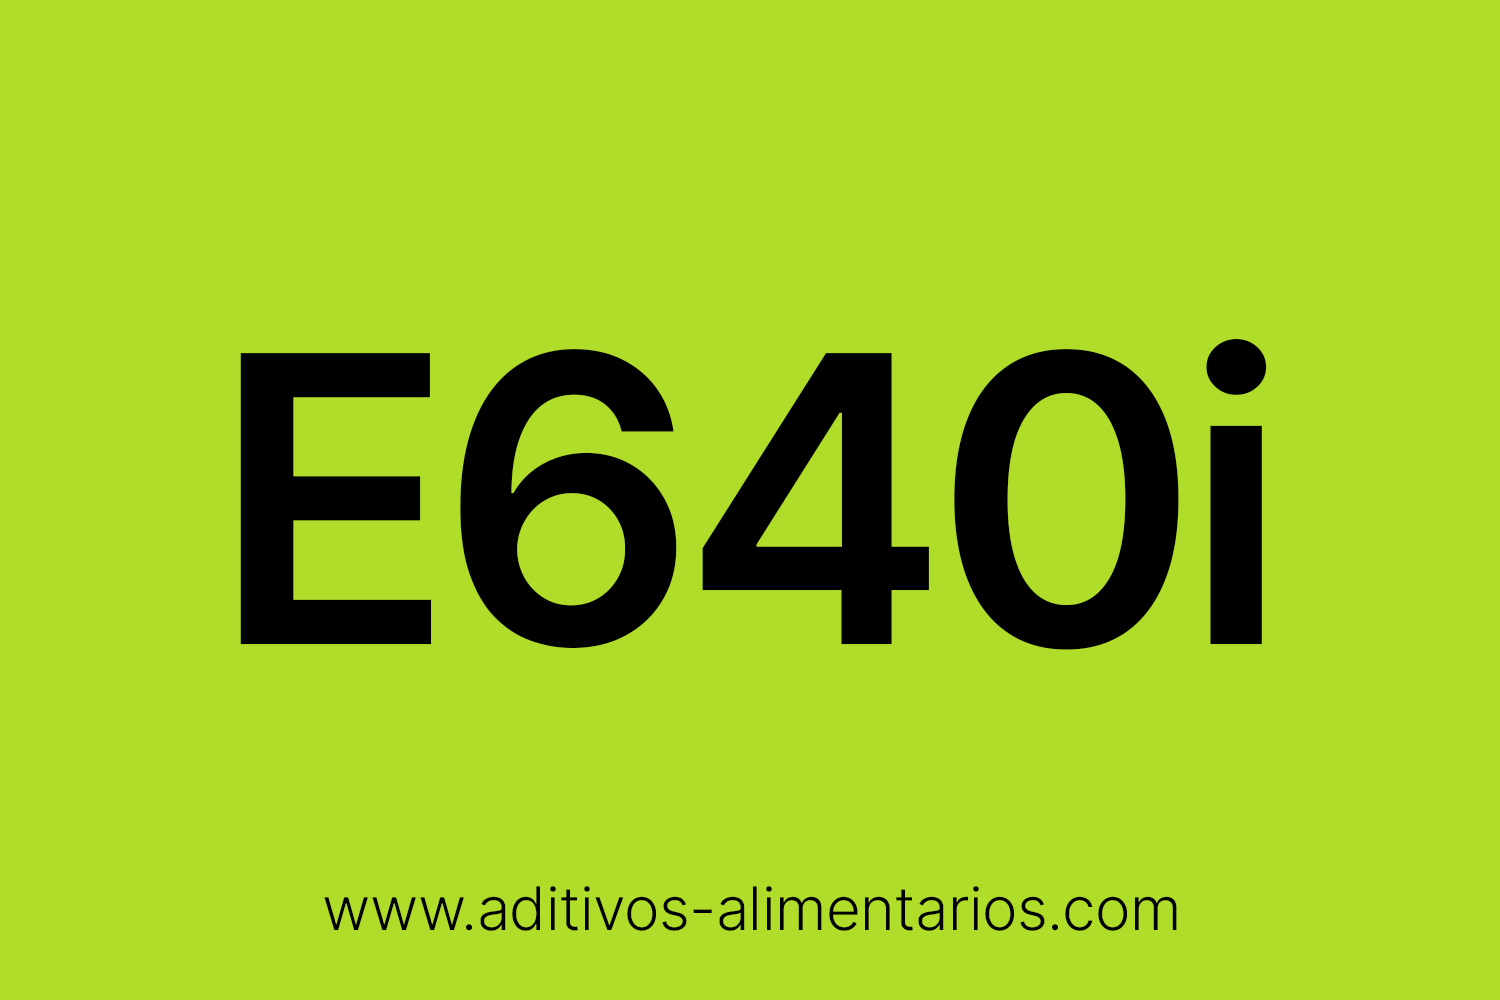 Aditivo Alimentario - E640i - Glicina